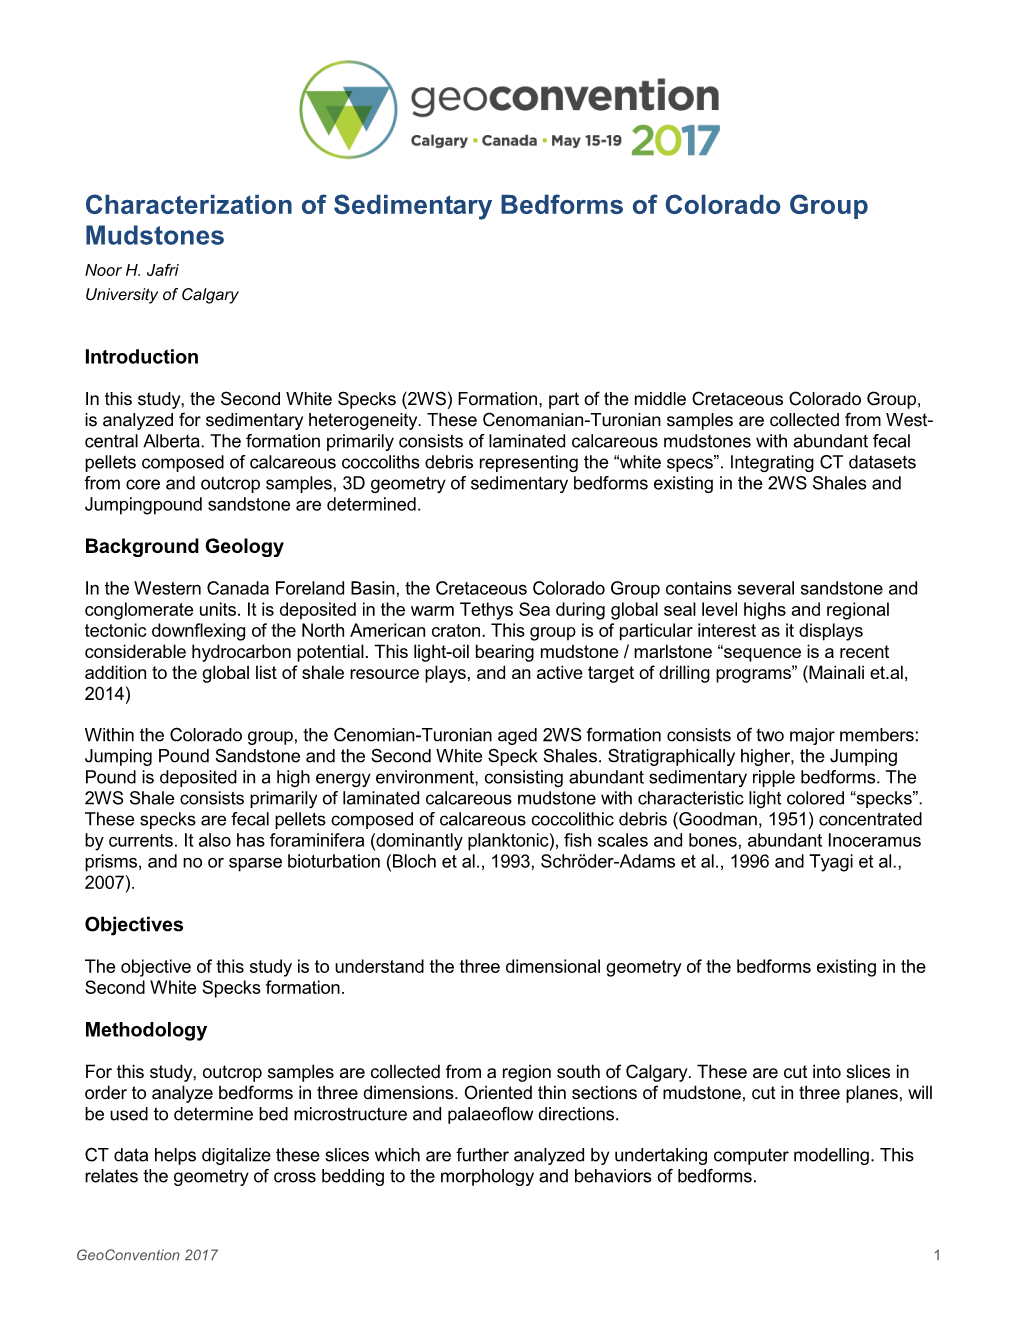 Characterization of Sedimentary Bedforms of Colorado Group Mudstones Noor H